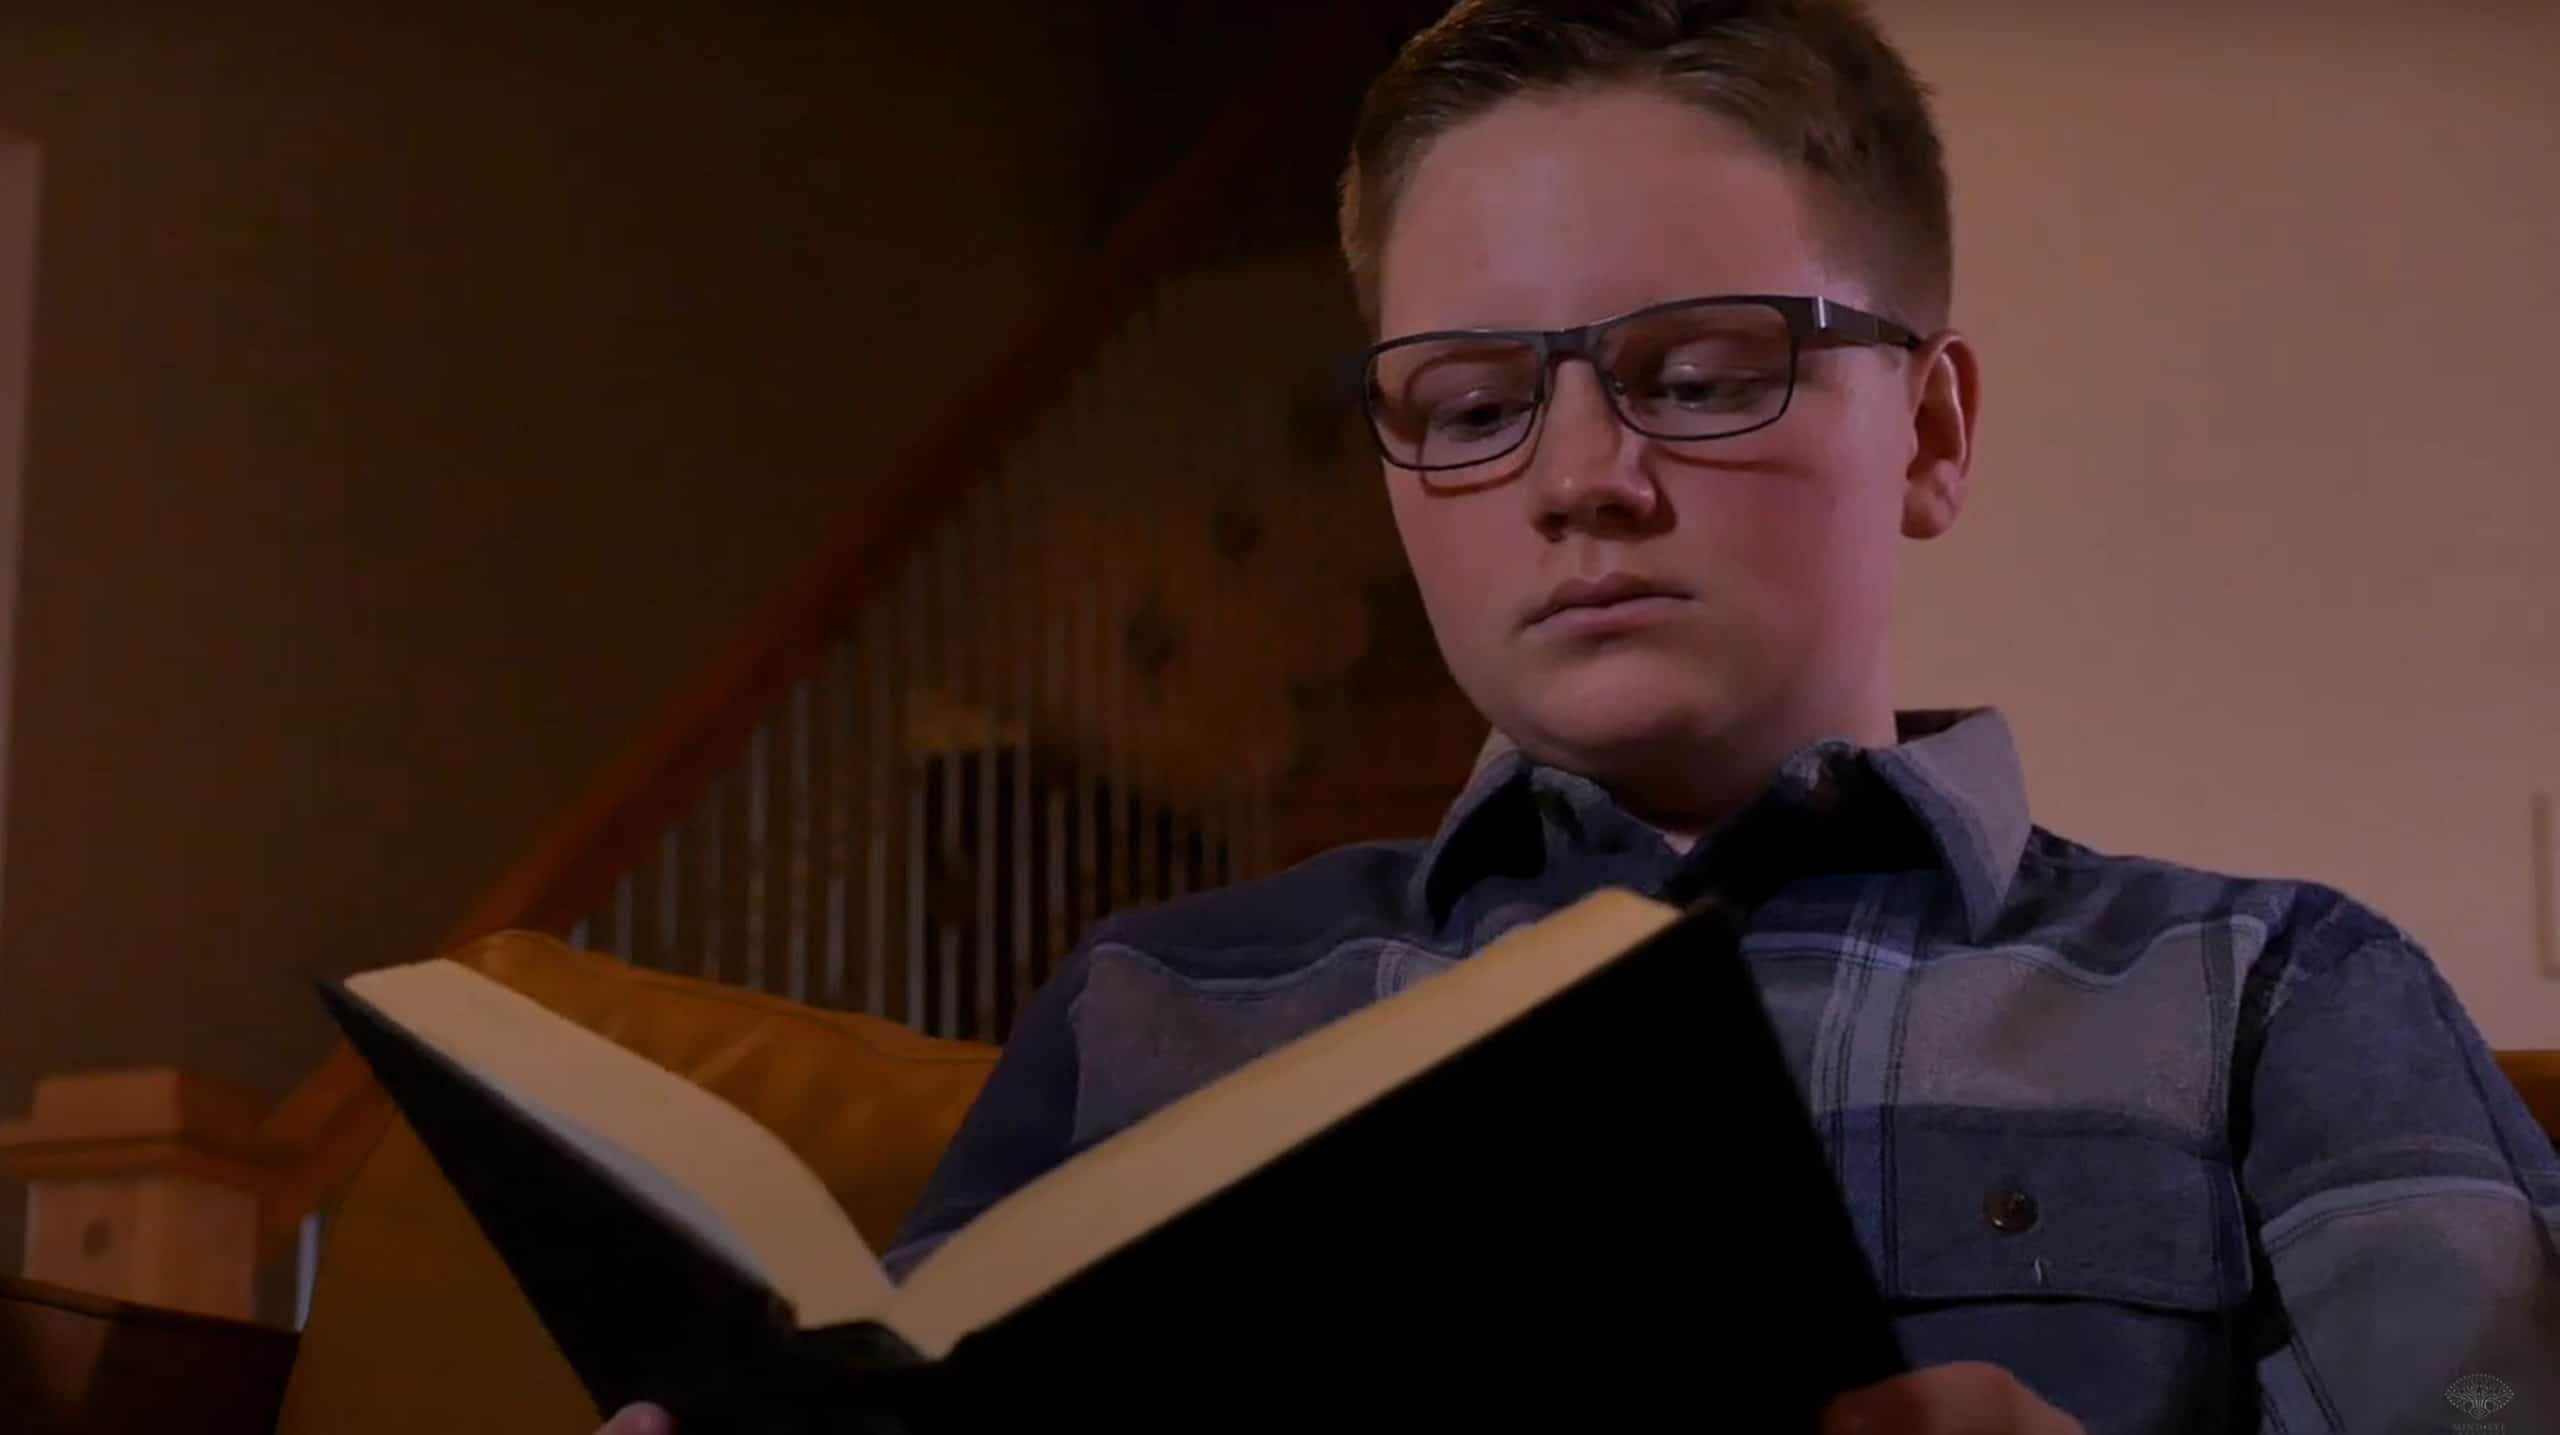 Brain Glasses Help 8th-Grader Overcome Dyslexia Symptoms